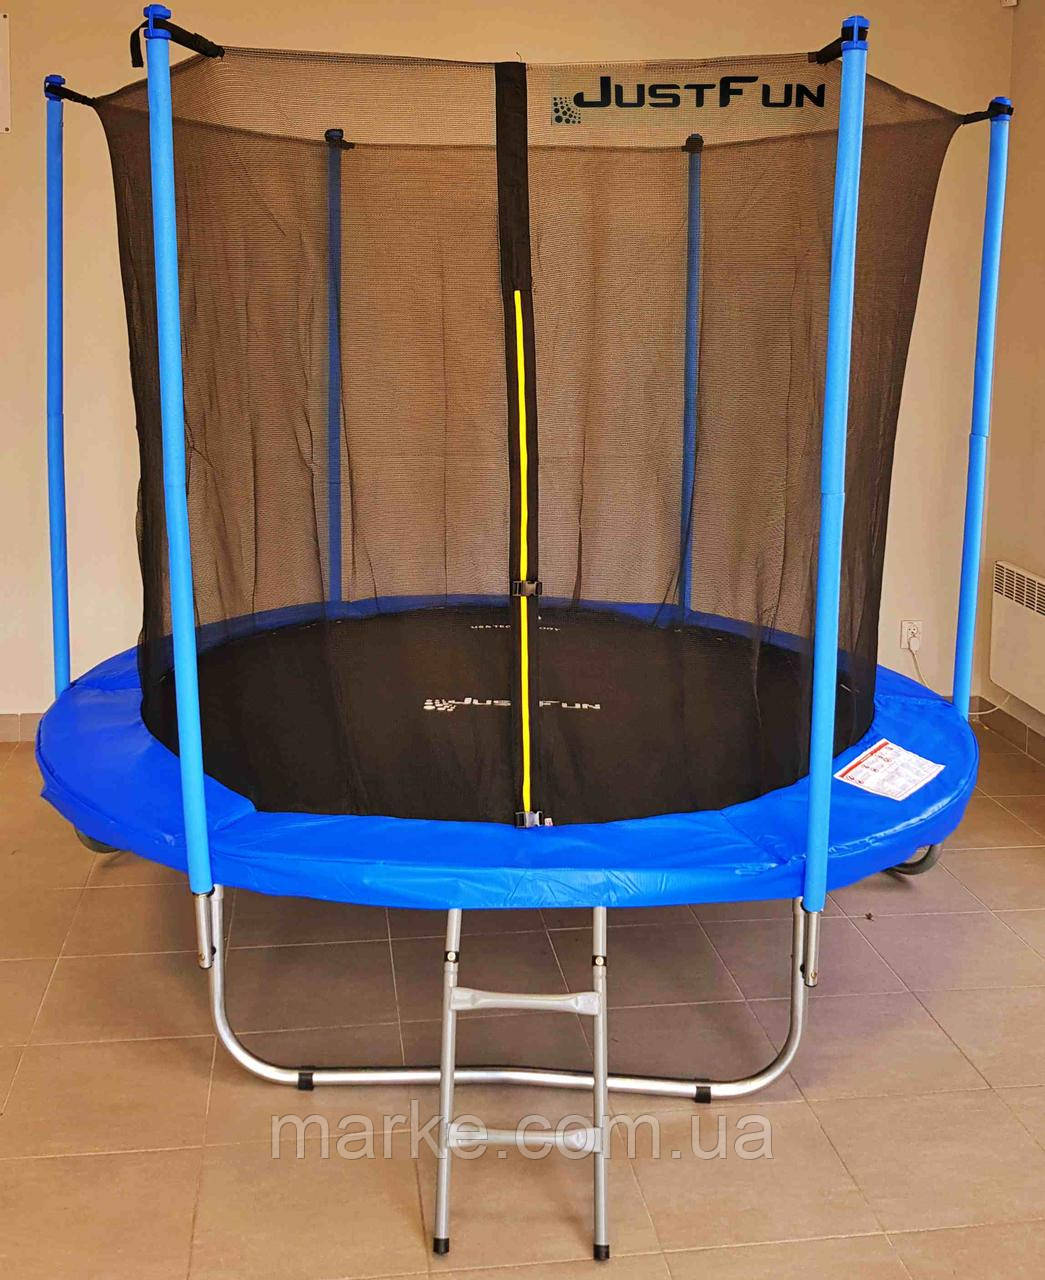 Батут JUST FUN діаметром 244см (8ft) спортивний для дітей з внутрішньої сіткою і сходами